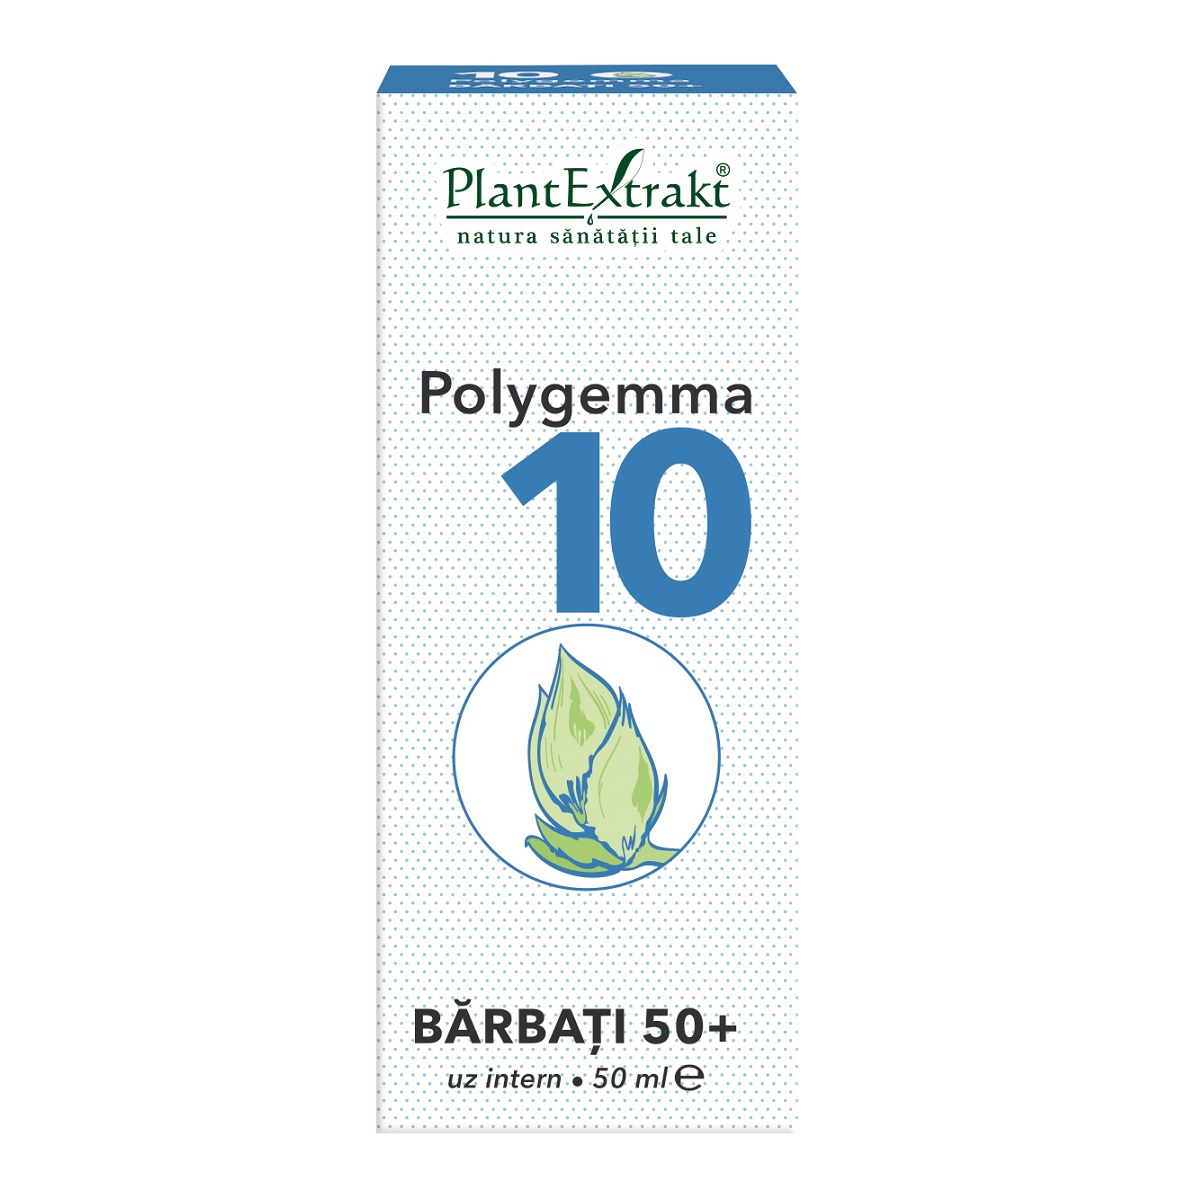 Extracte gemoderivate - Polygemma 10 pentru Barbati de peste de 50 ani x 50ml, medik-on.ro